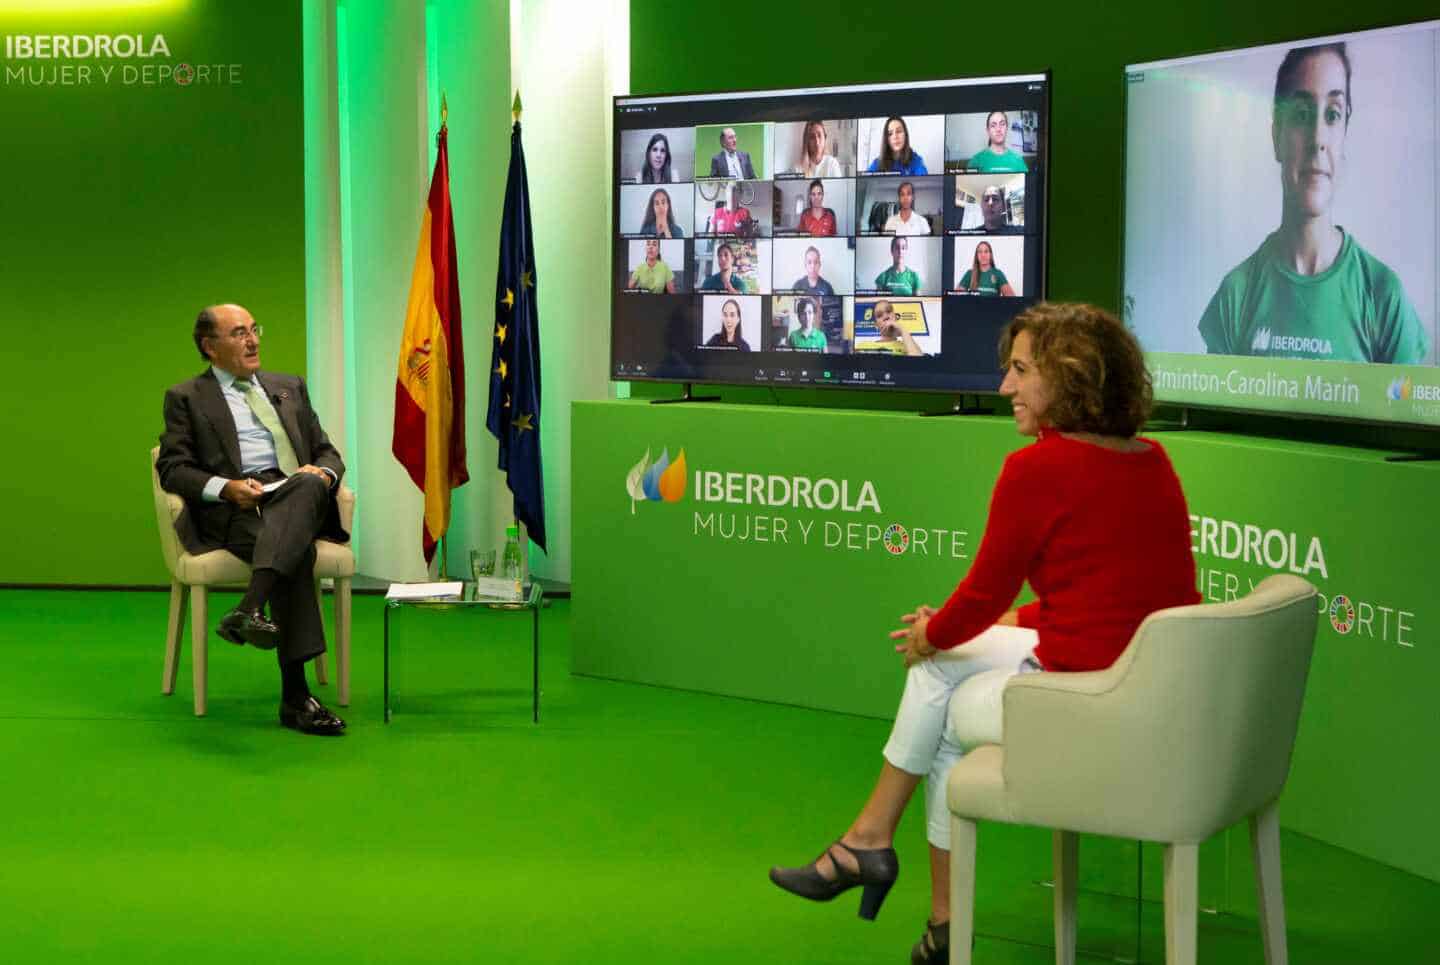 El presidente de Iberdrola, Ignacio Sánchez Galán, y la presidenta del CSD, Irene Lozano, en un encuentro virtual con deportistas.